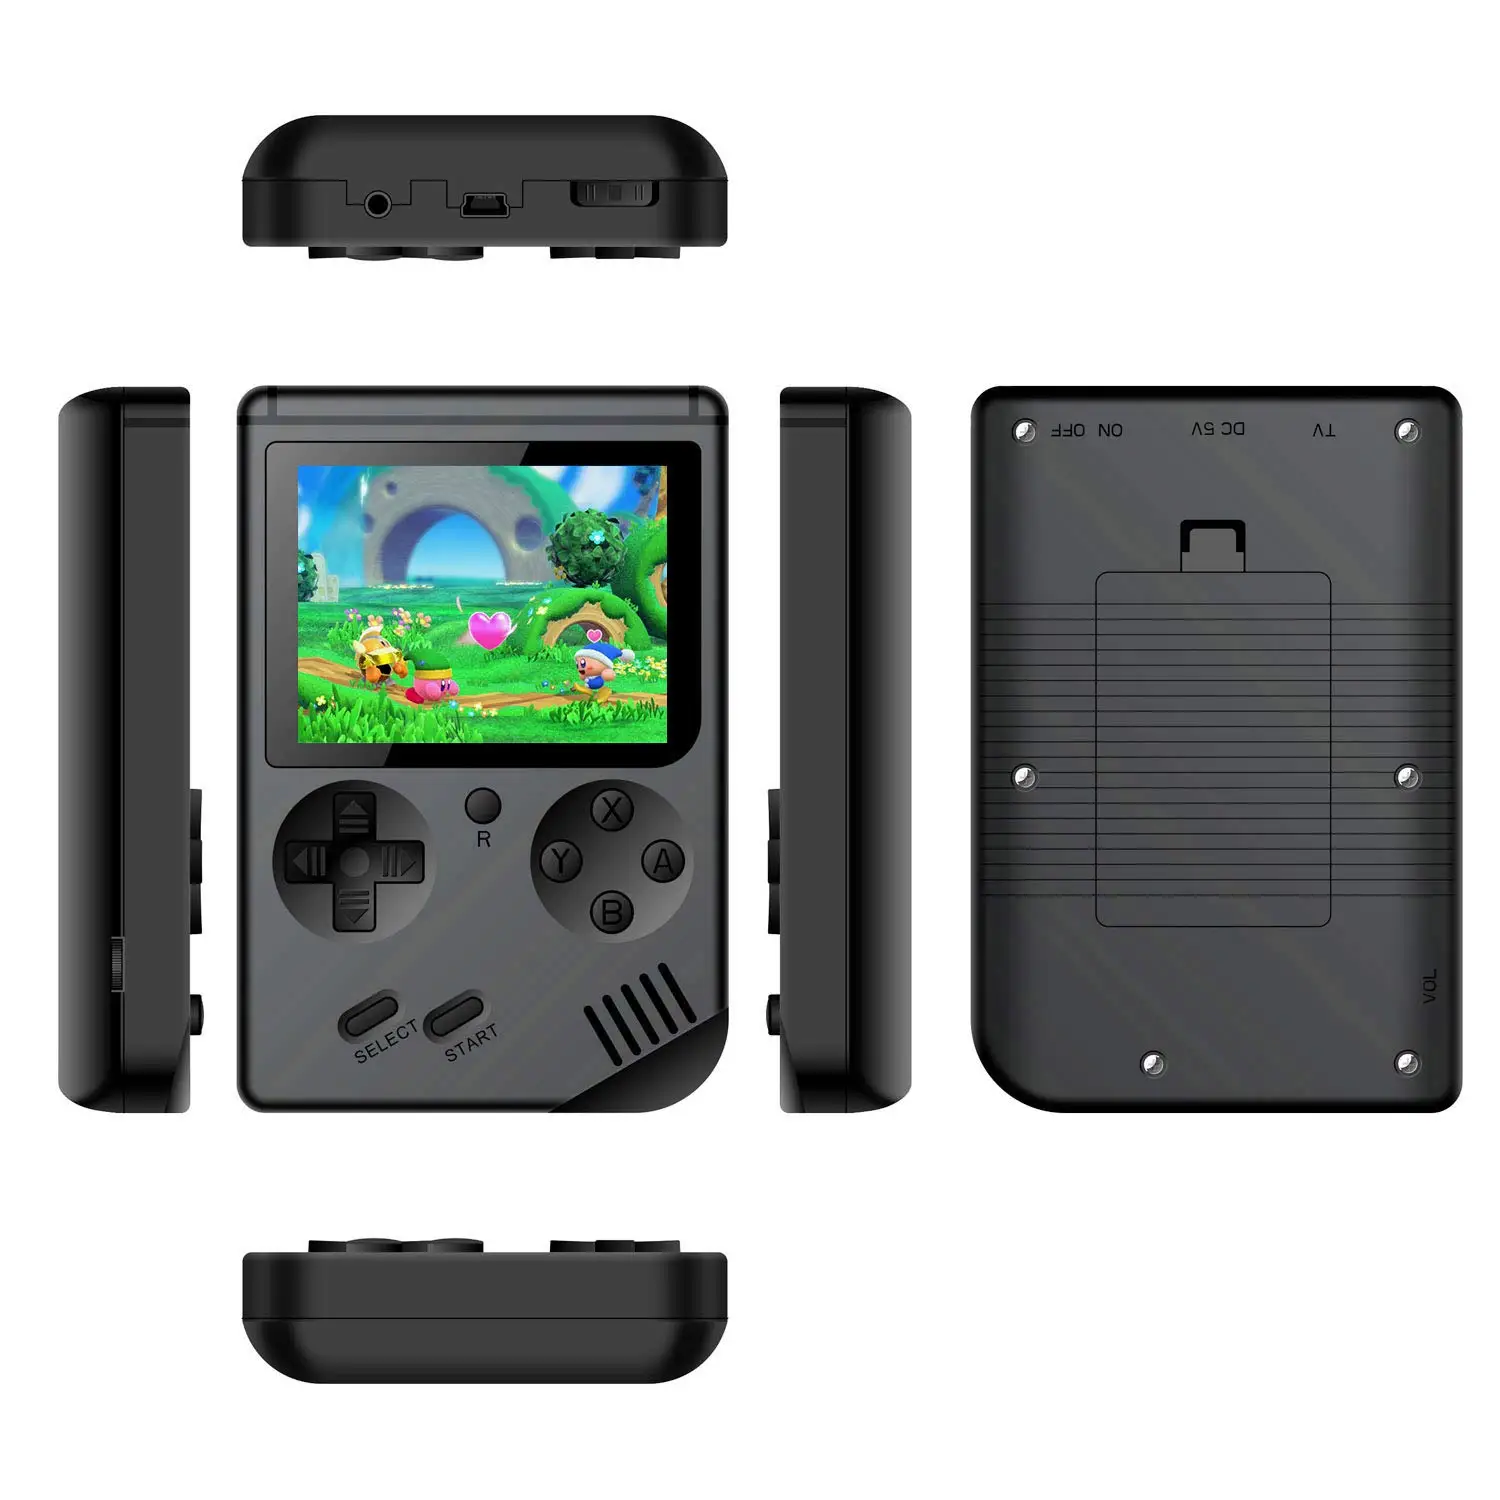 168 игры мини Портативная Ретро видео консоль портативные игры Advance плееры мальчик 8 бит встроенный Gameboy 3,0 дюймов цветной ЖК-экран